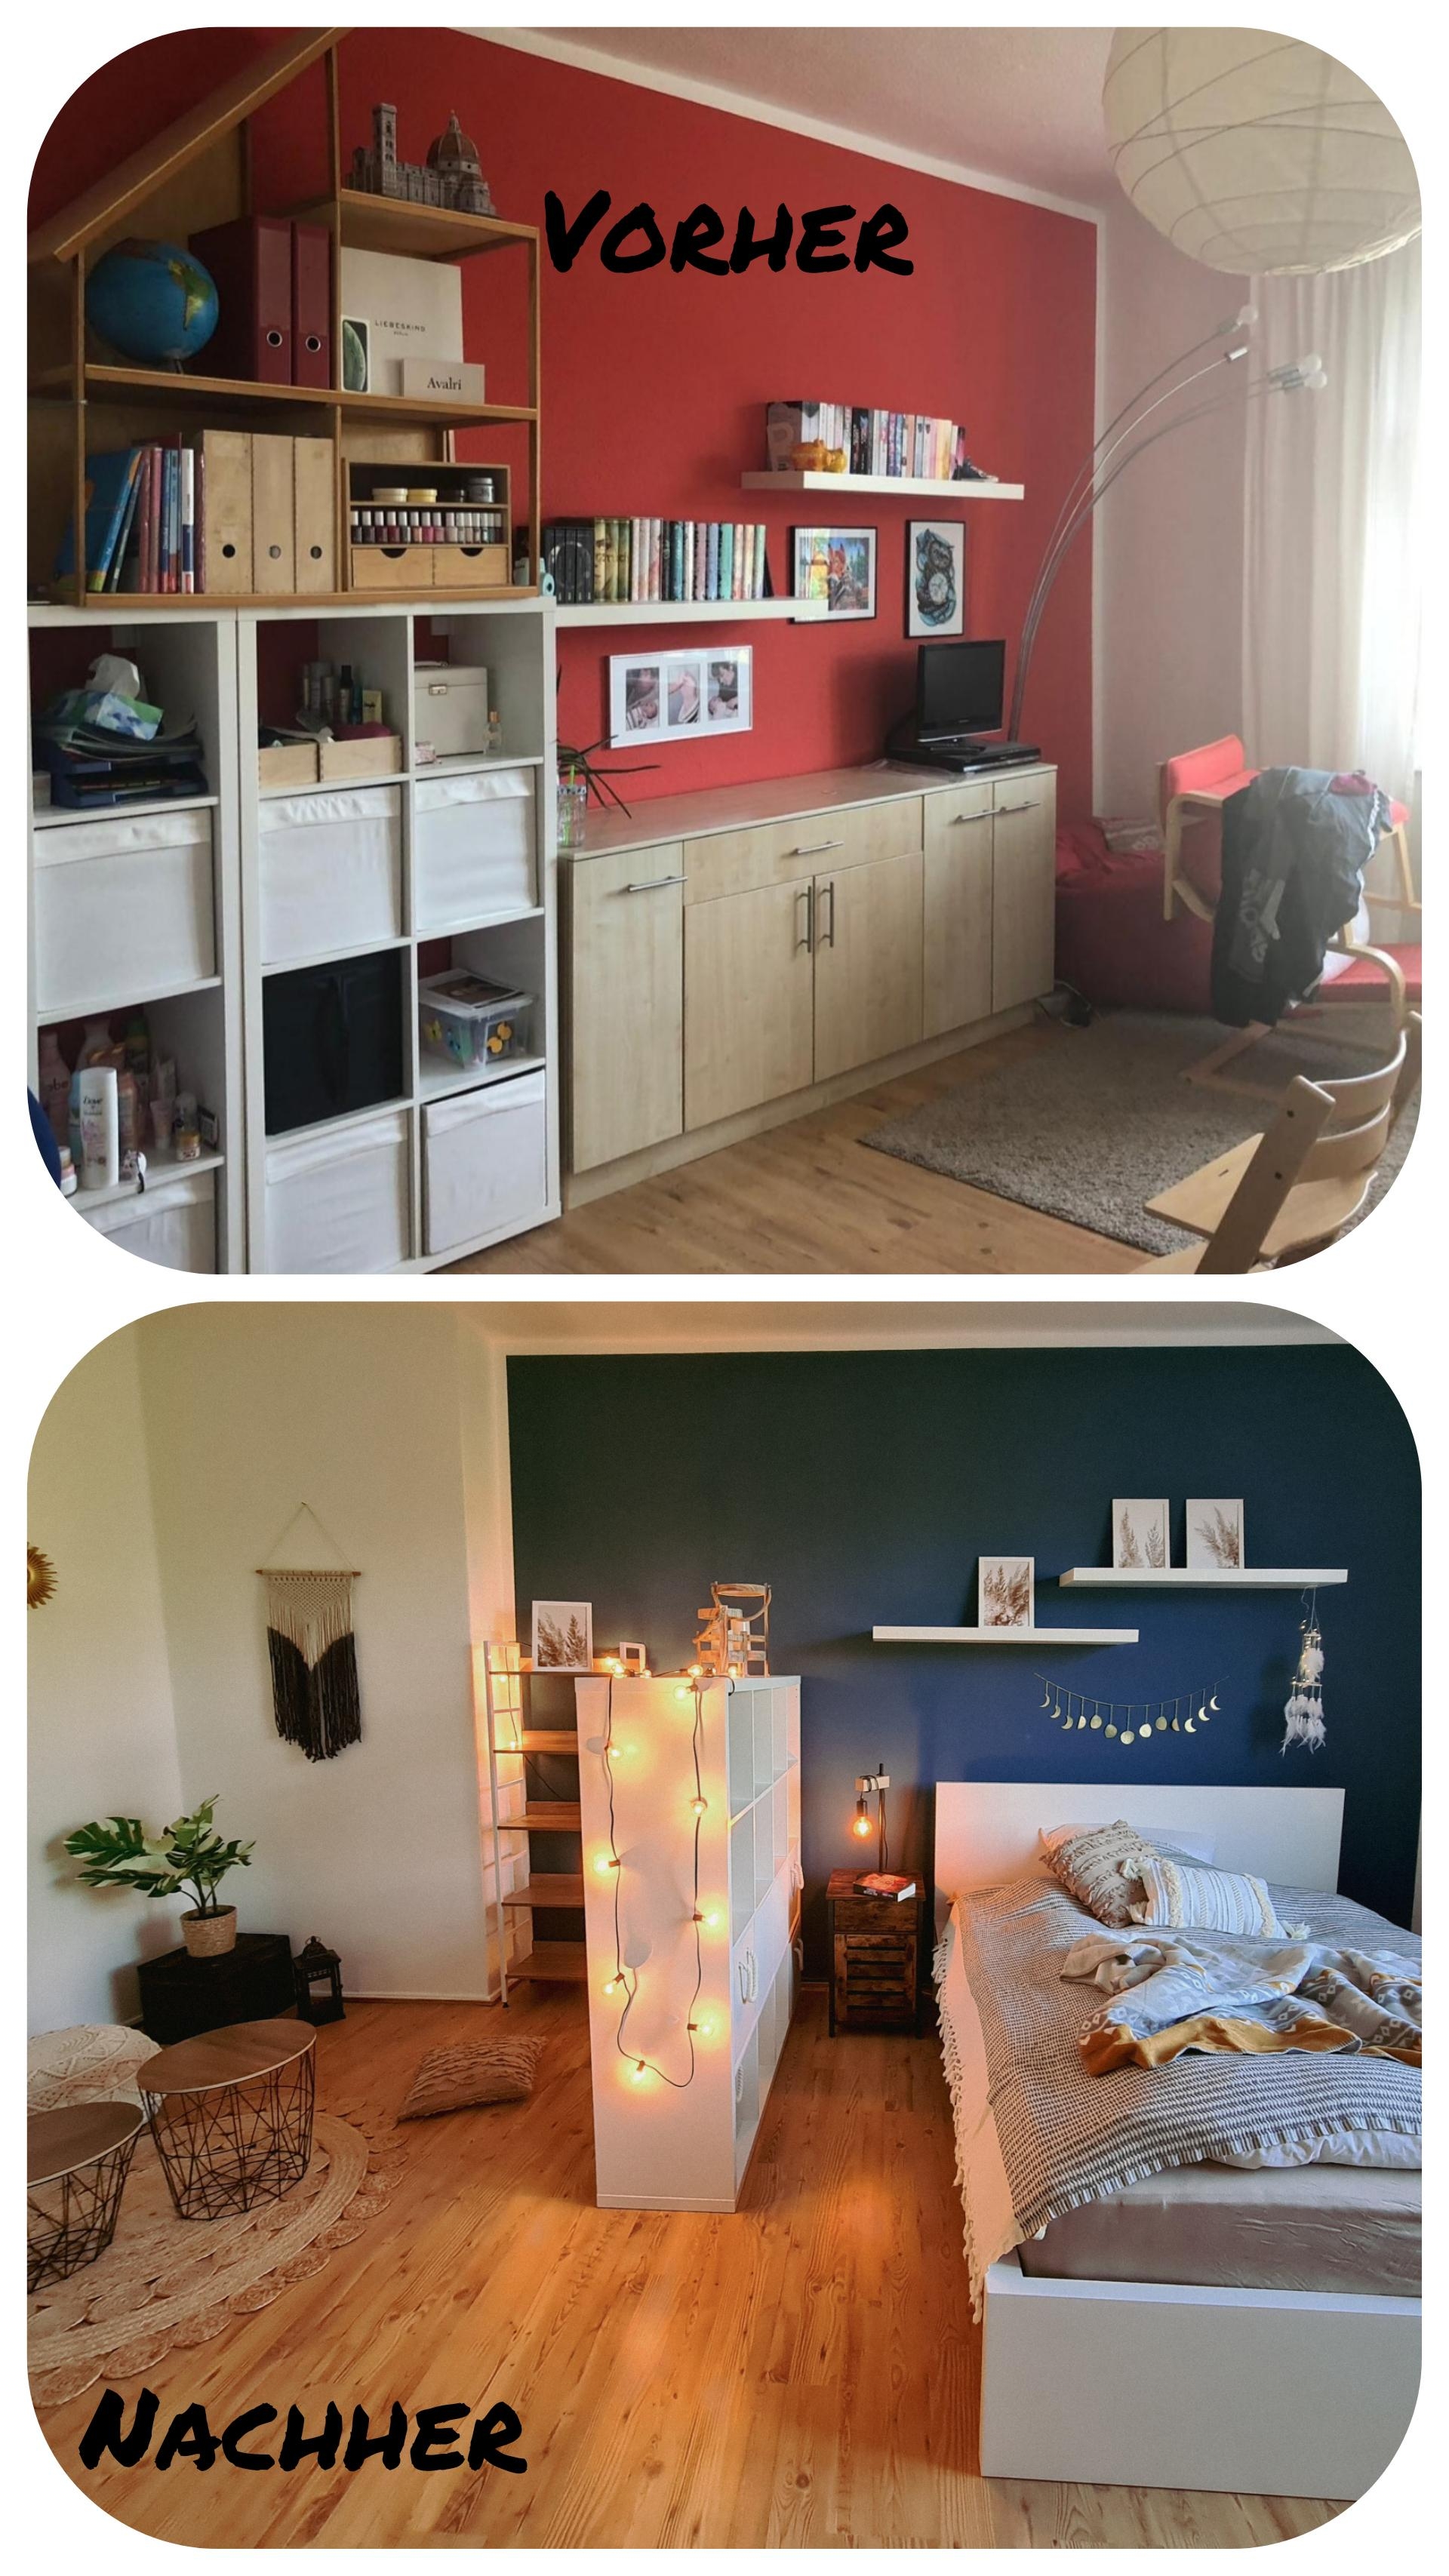 Ich durfte ein Kinderzimmer in ein cooles Jugendzimmer verwandeln. #vorhernachher #teeniezimmer #bohostyle #farbigewände